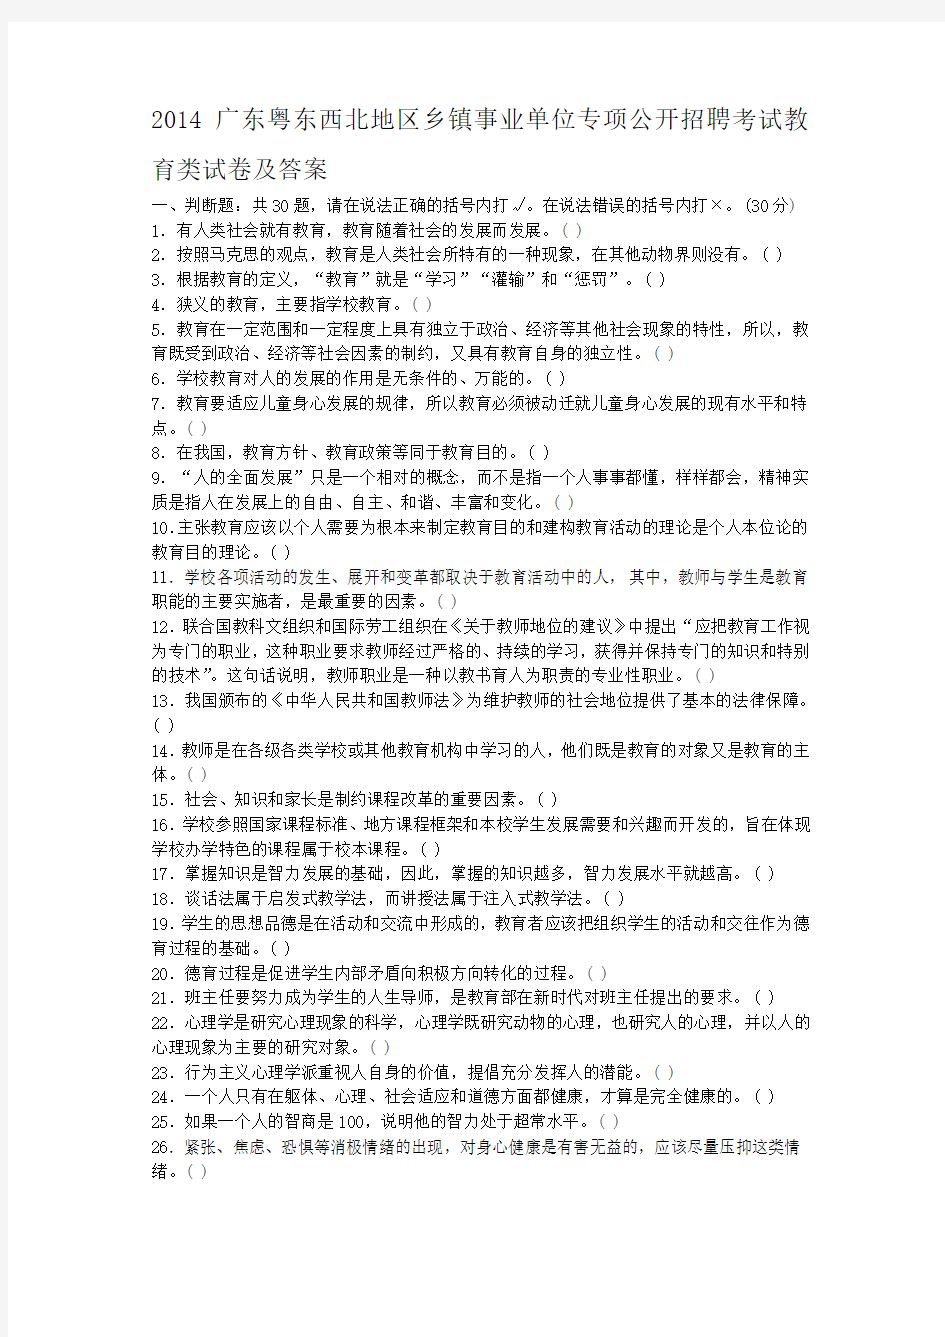 2014广东粤东西北地区乡镇事业单位专项公开招聘考试教育类试卷及答案